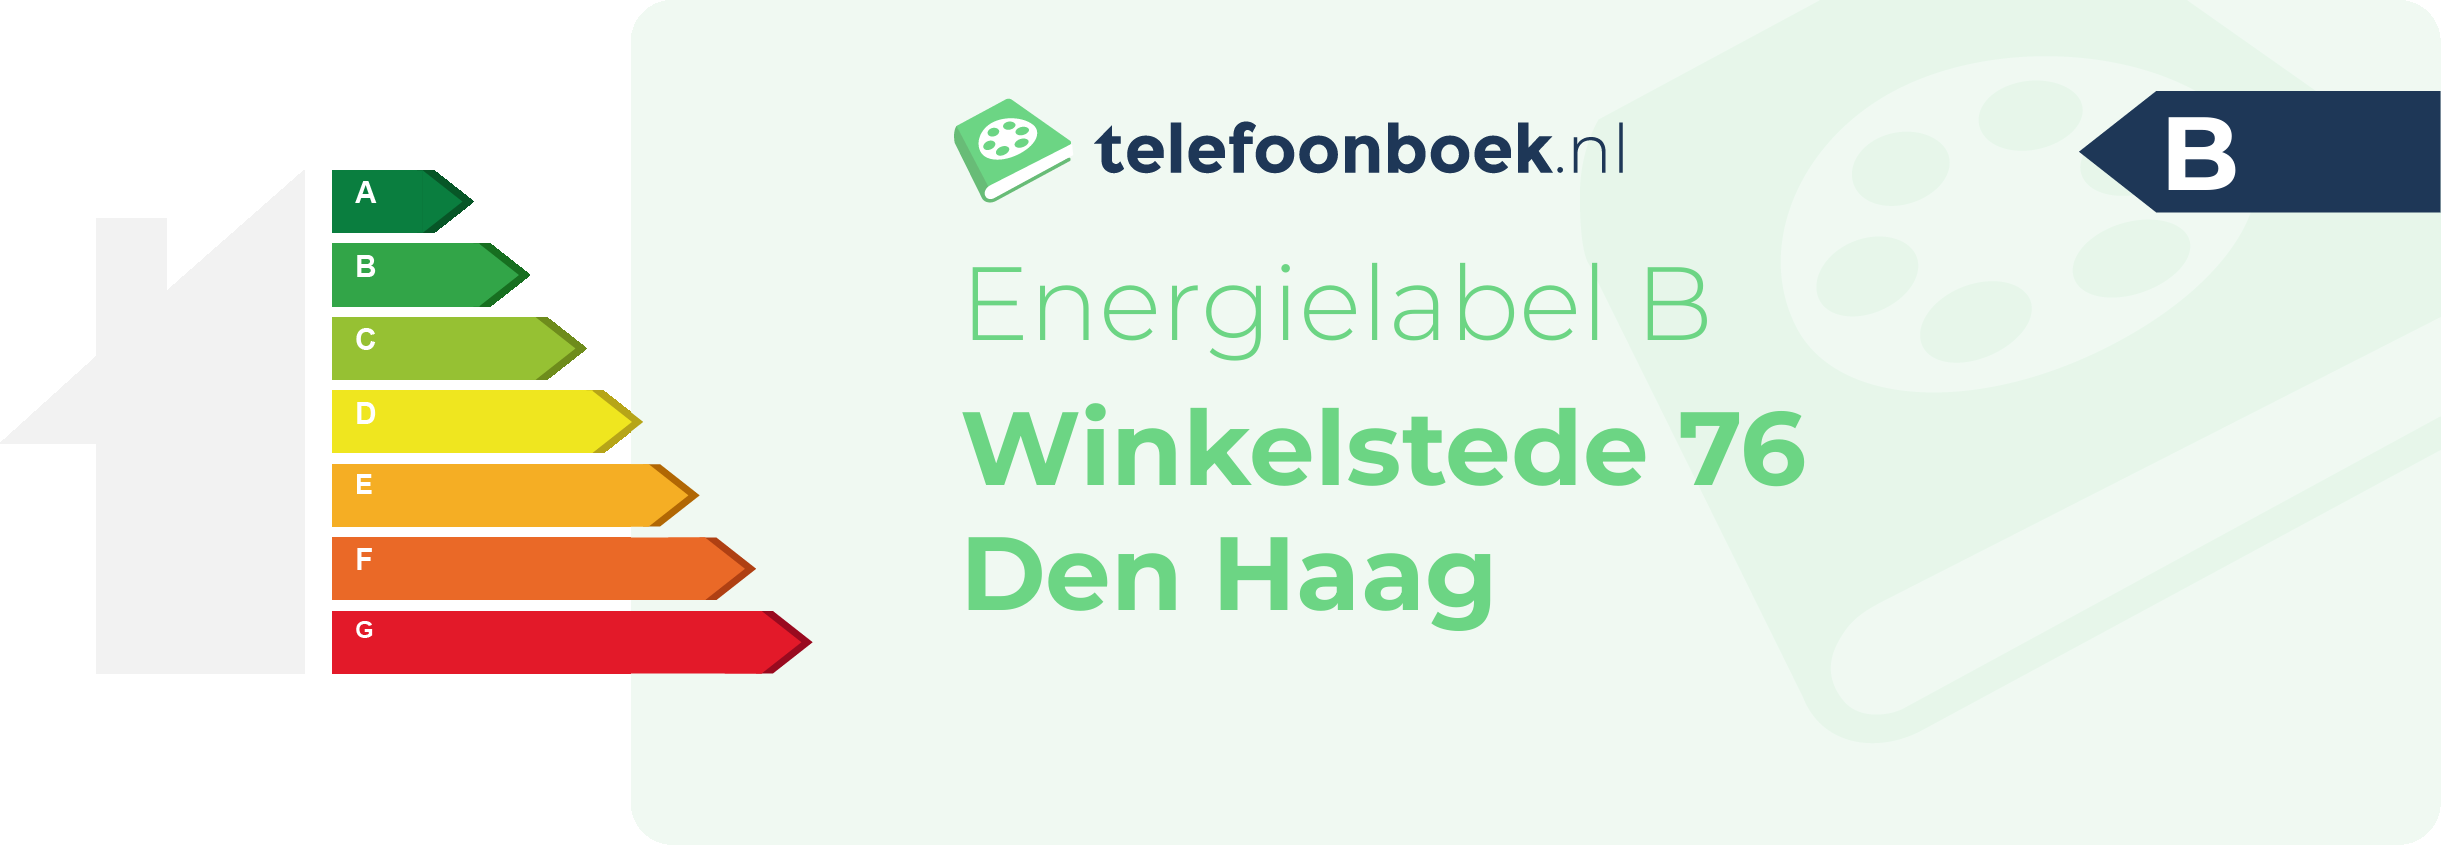 Energielabel Winkelstede 76 Den Haag